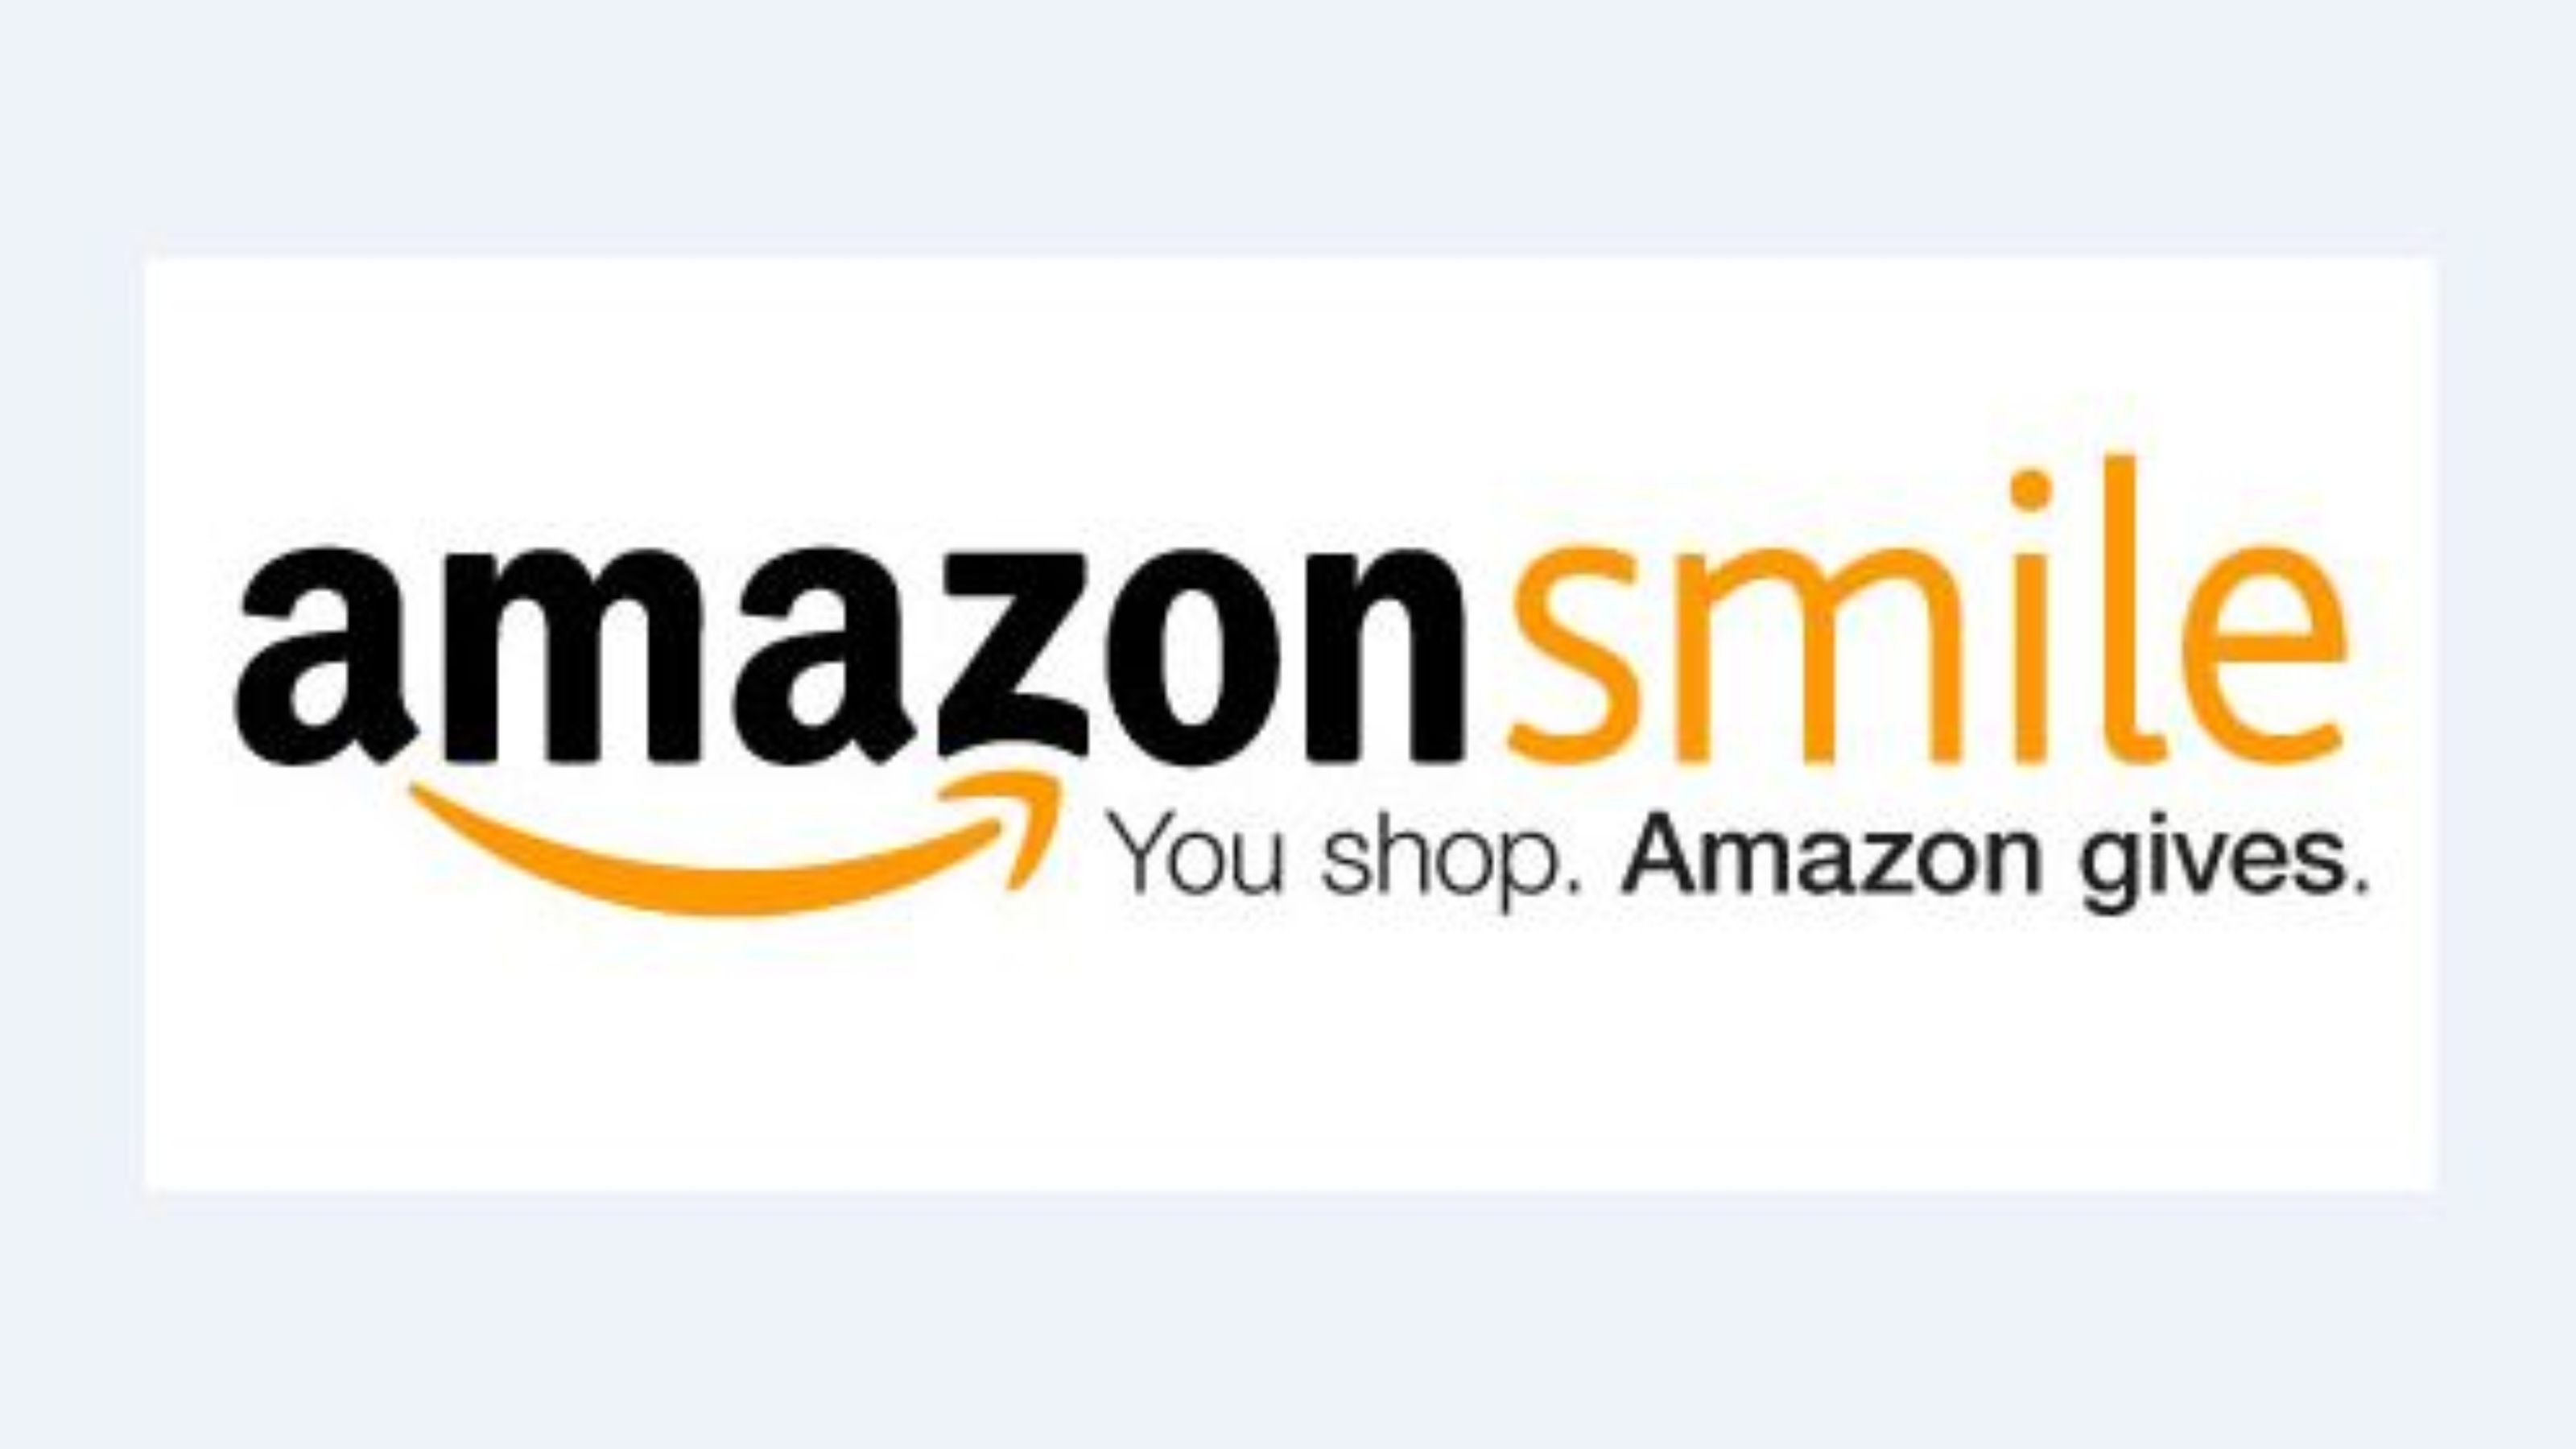 Amazon donates 0.5% of the price of eligible AmazonSmile.